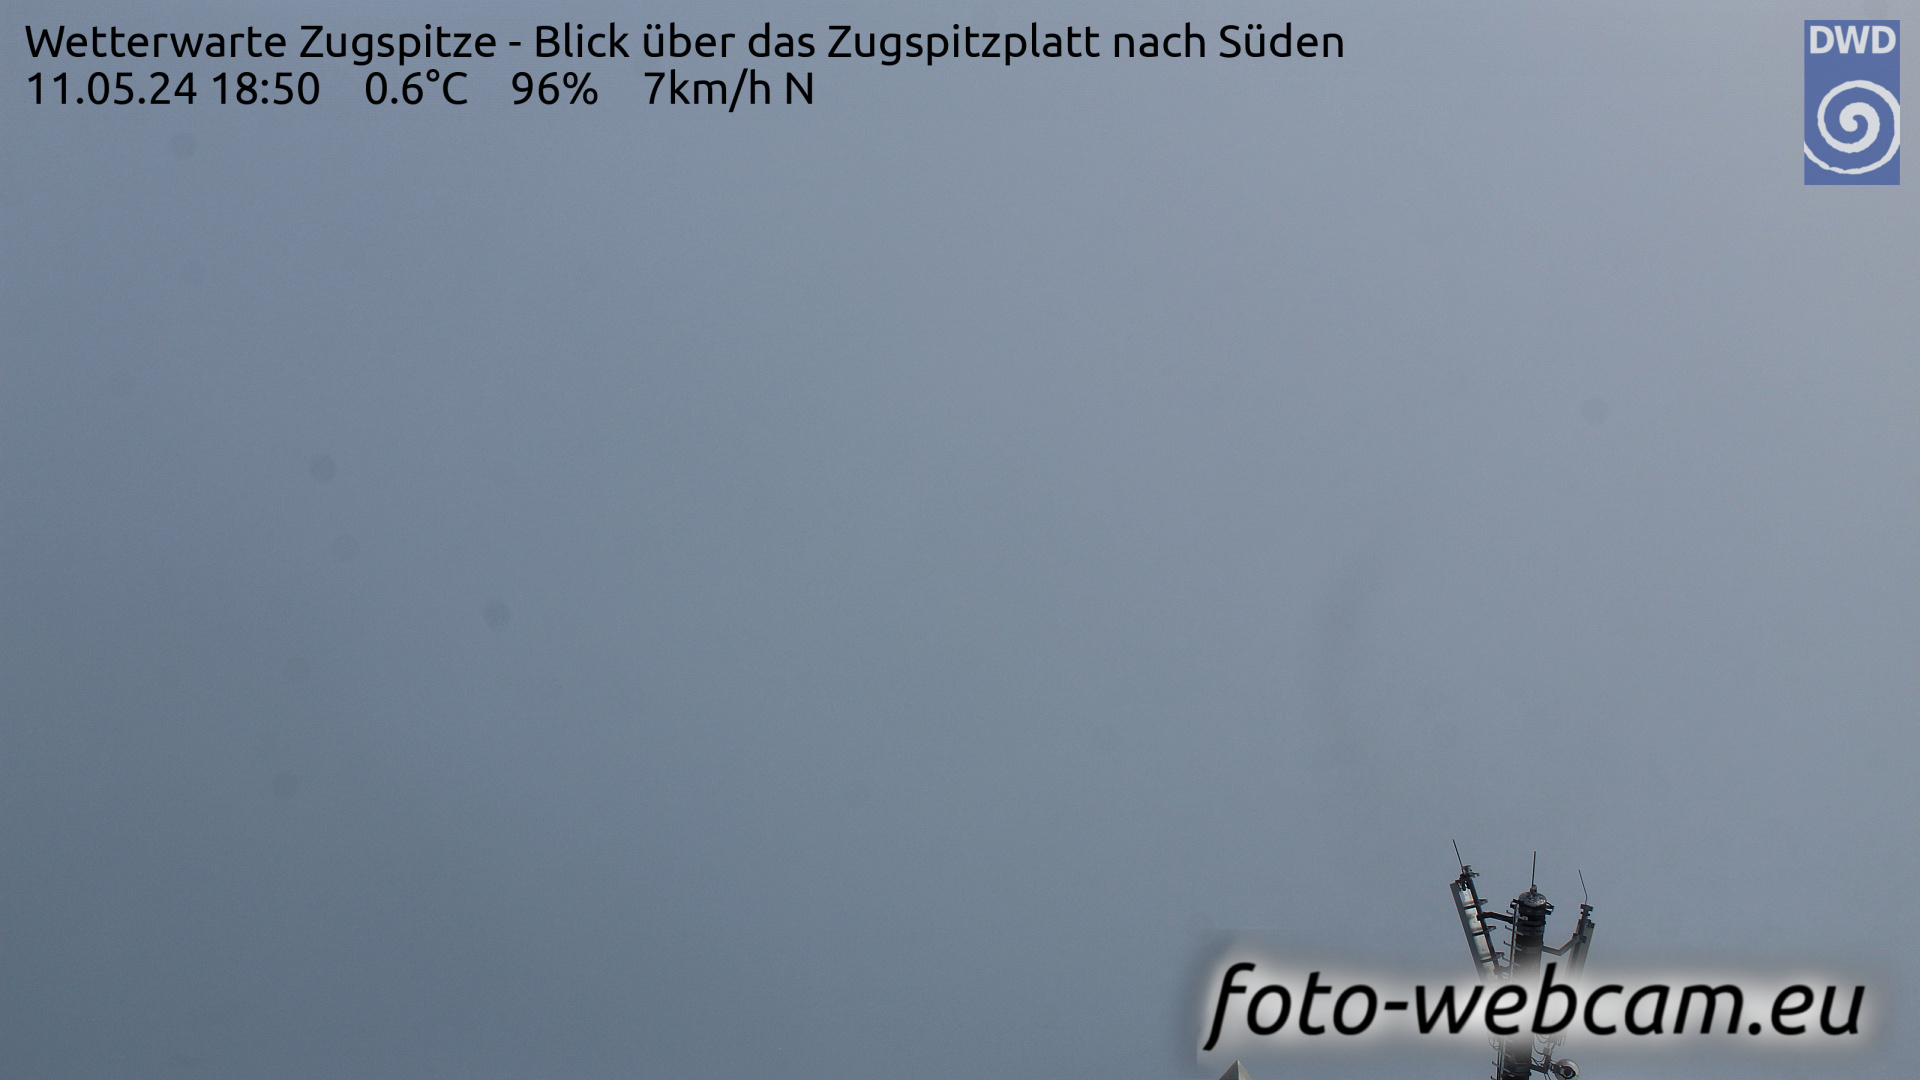 Zugspitze Wed. 18:54